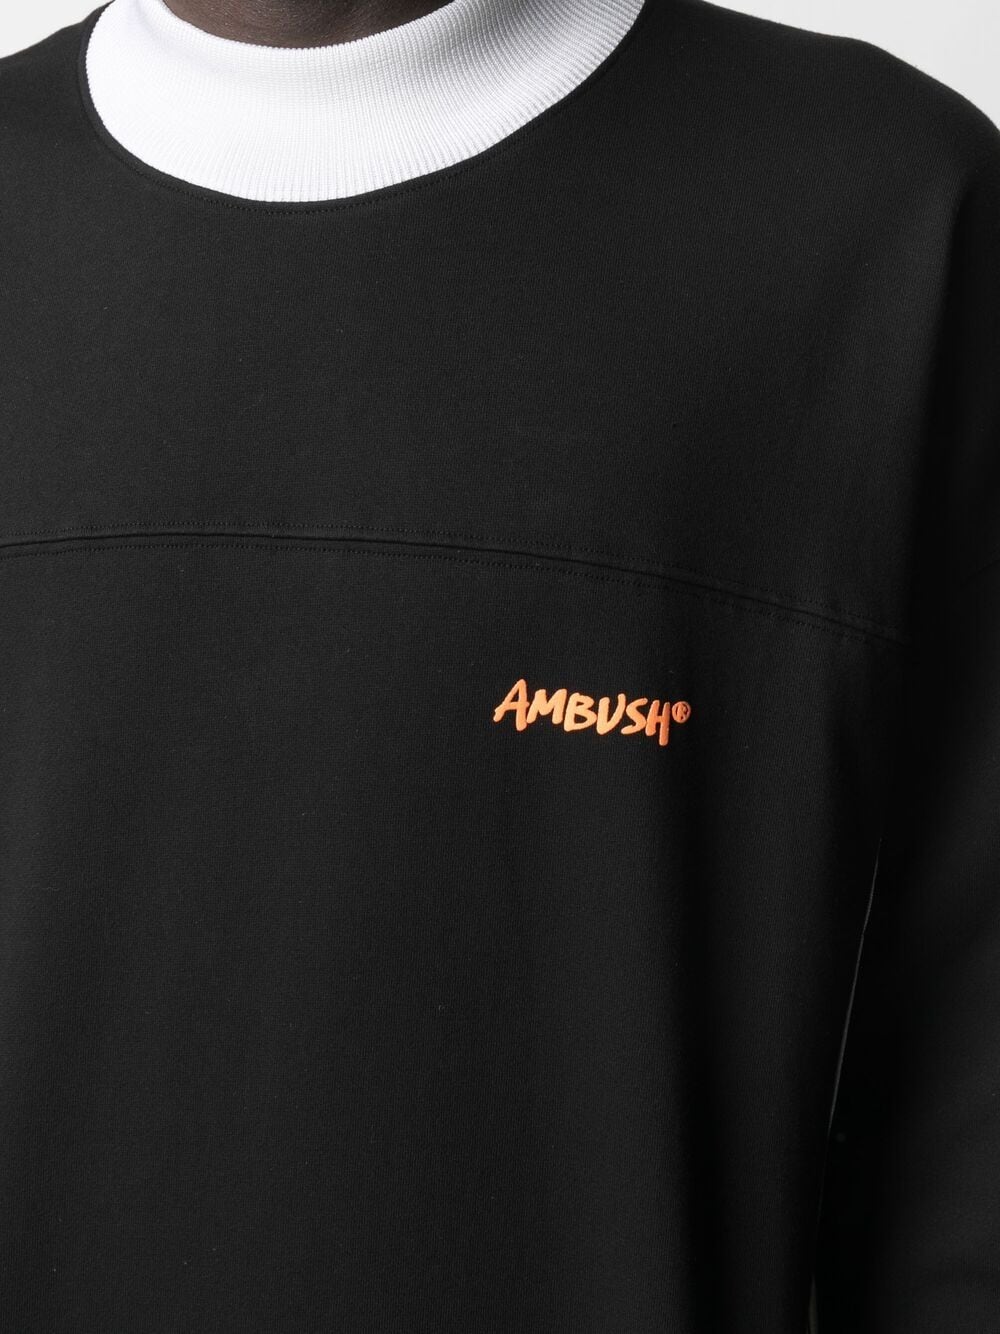 фото Ambush двухцветная толстовка с логотипом